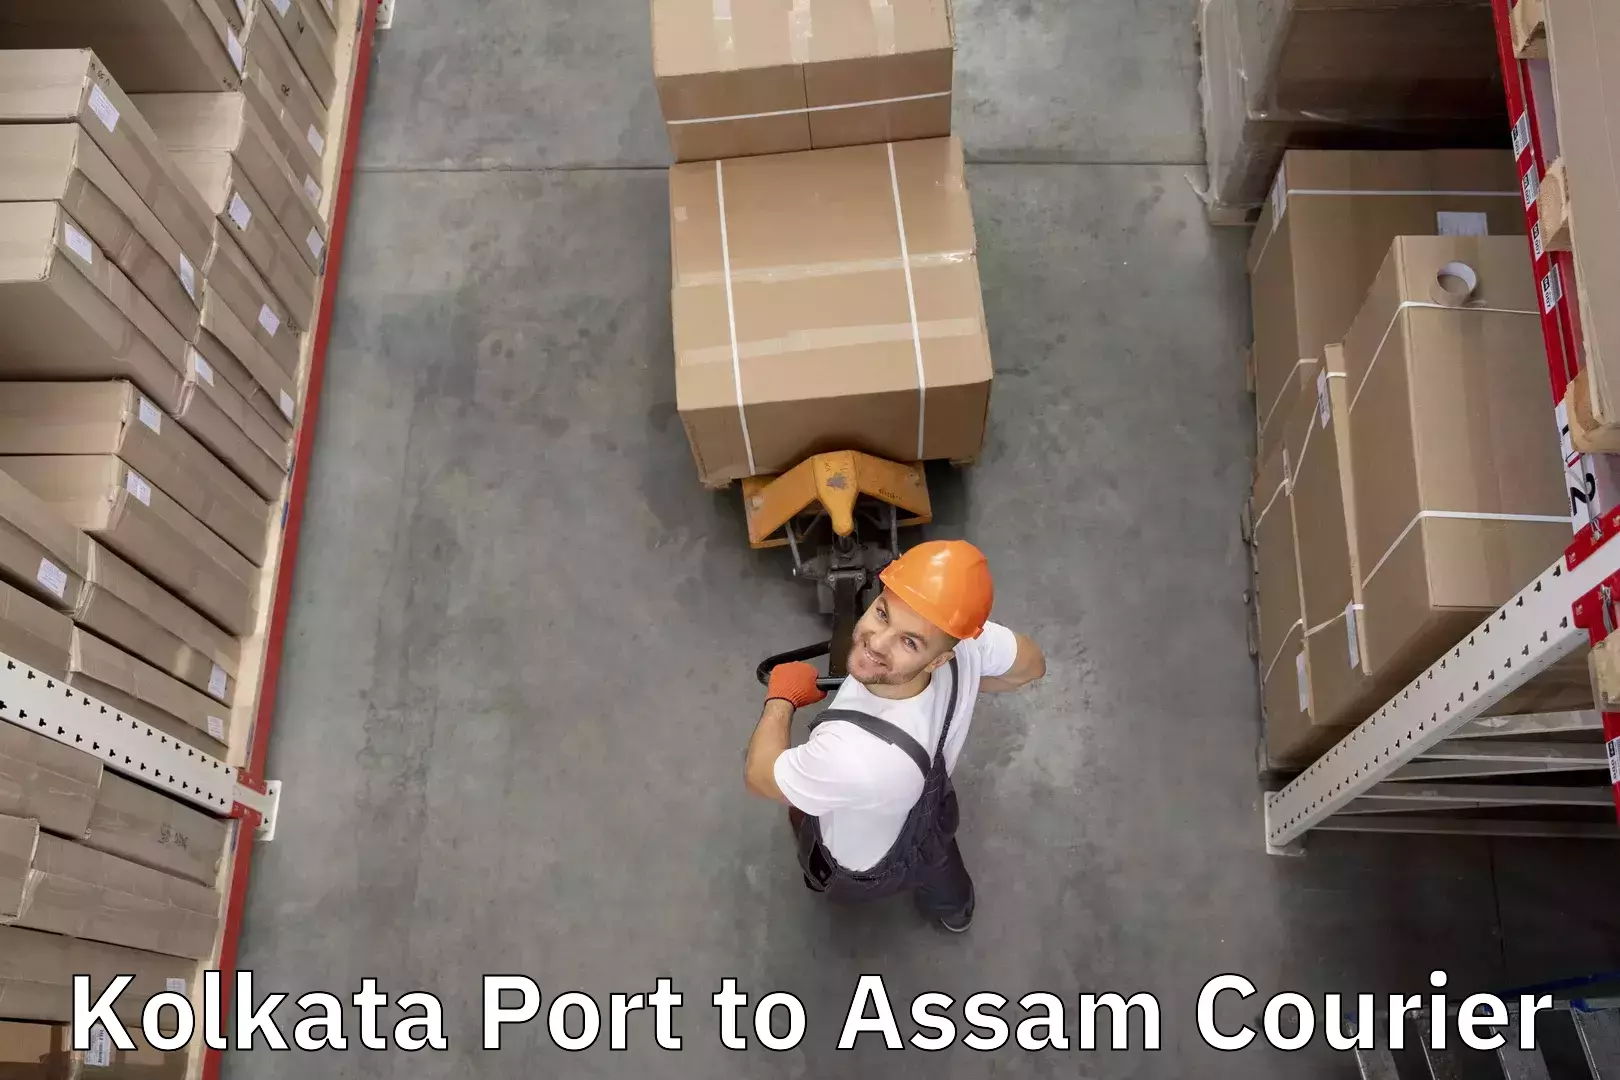 Baggage relocation service Kolkata Port to Silapathar